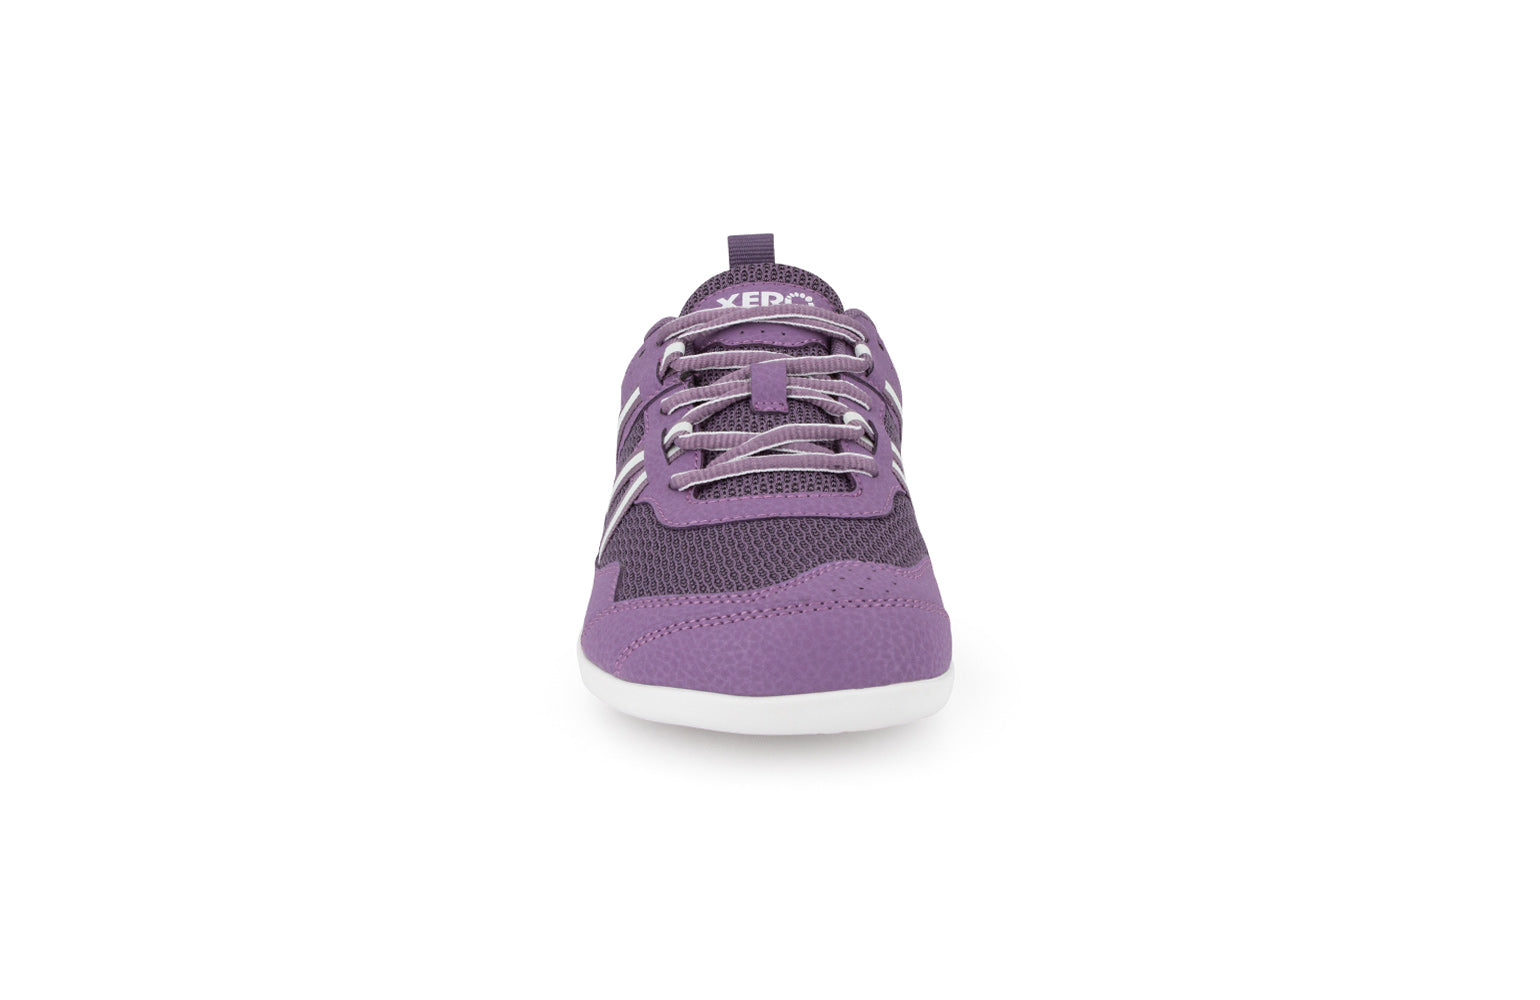 Xero Shoes Prio Kids barfods træningssko/sneakers til børn i farven violet, forfra